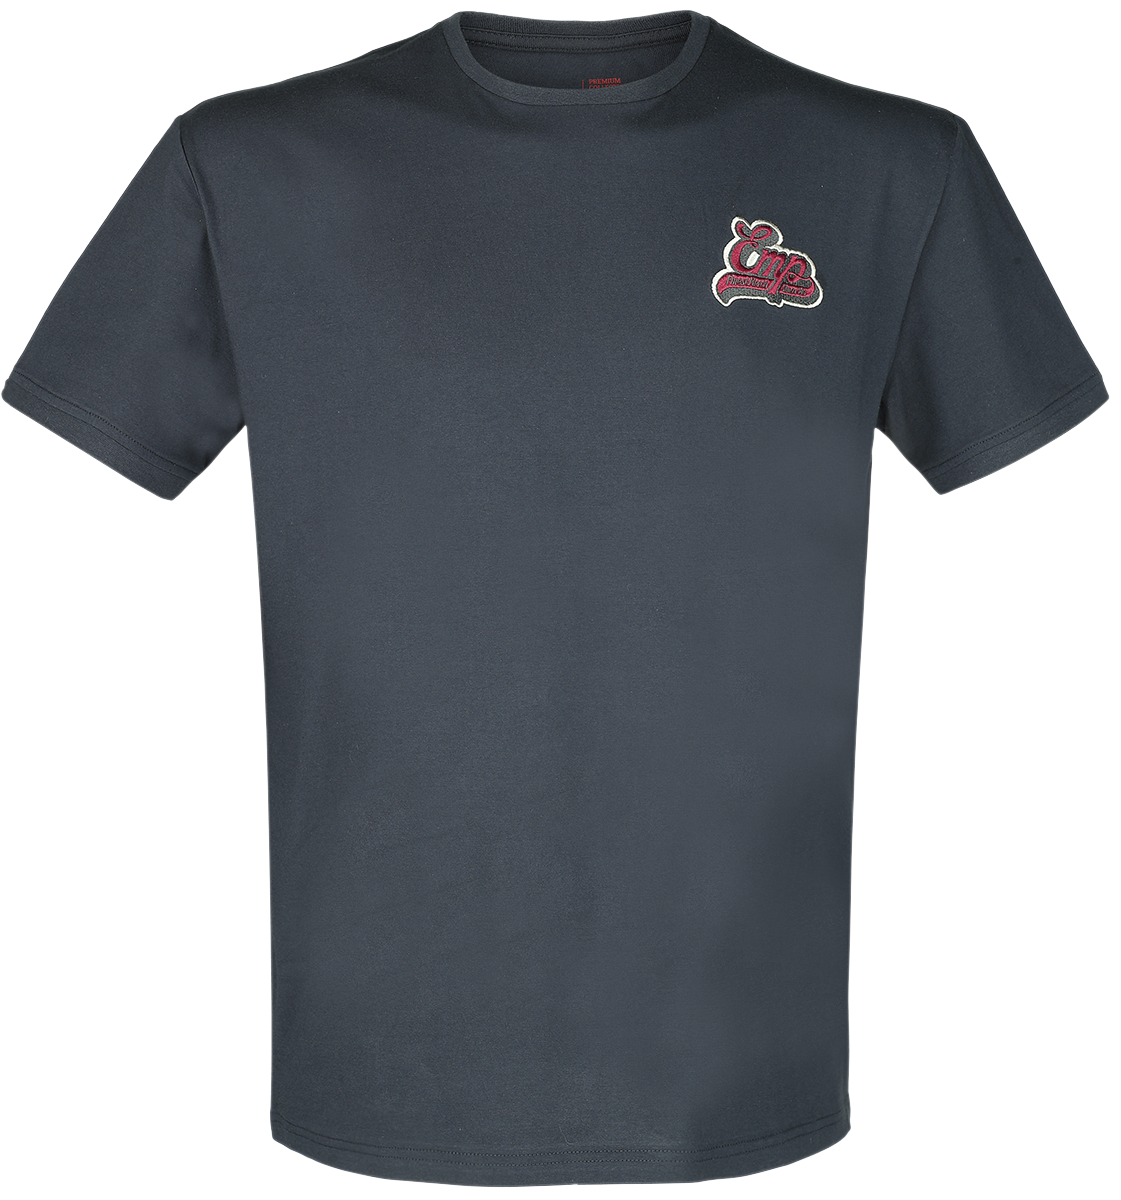 EMP Premium Collection - T-Shirt mit EMP Stickerei - T-Shirt - dunkelblau - EMP Exklusiv!